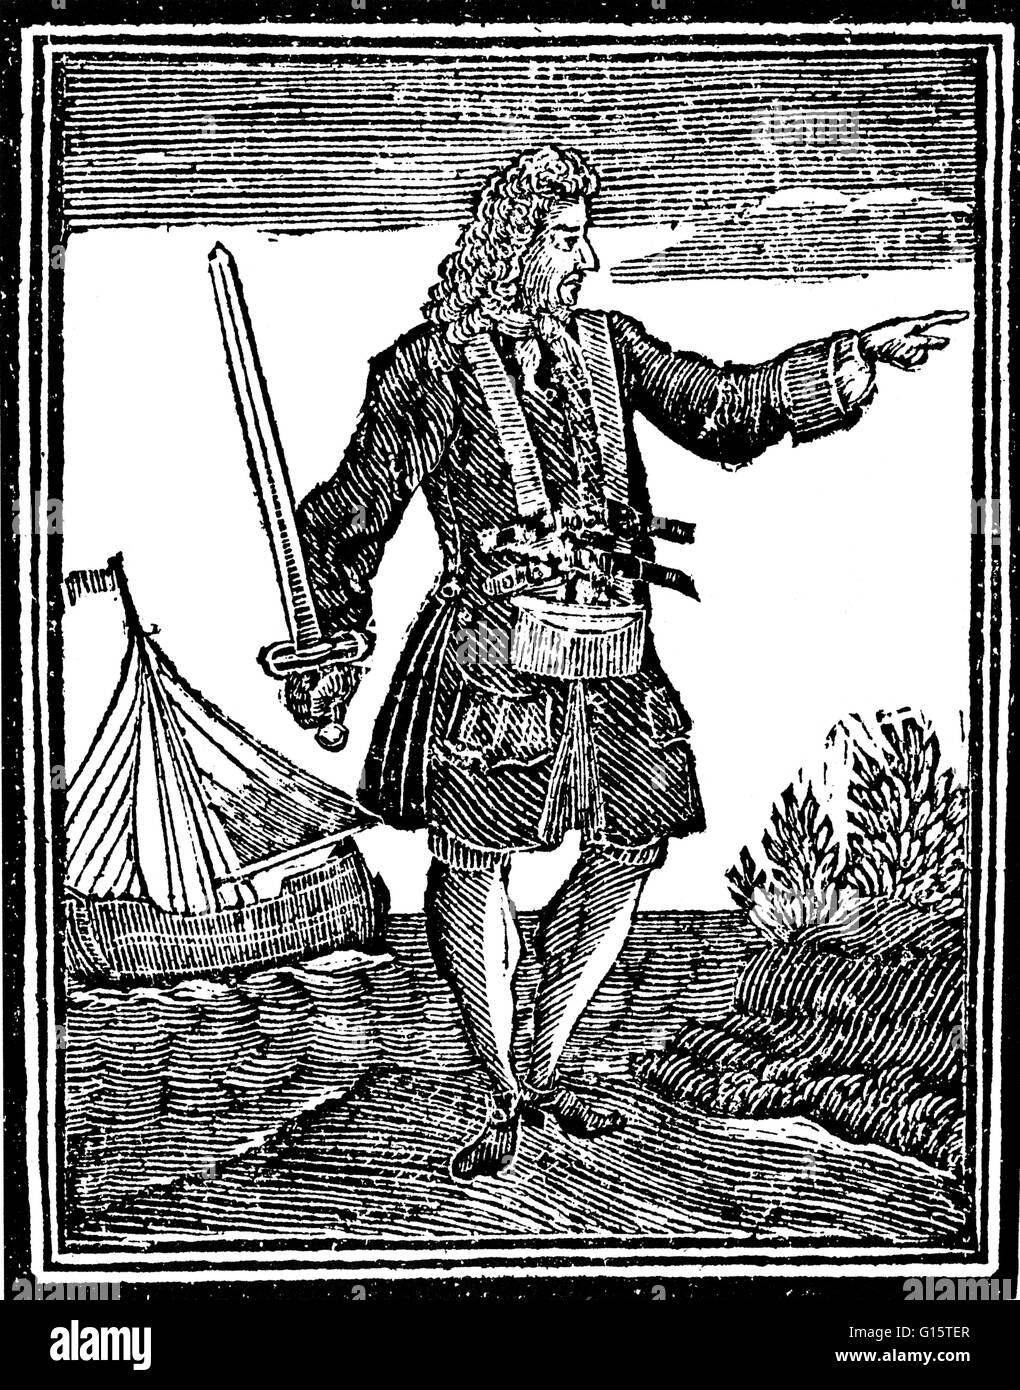 Charles Vane (1680 - 29 de marzo de 1721) fue un pirata inglés que  depredados Francés e Inglés el envío. Su carrera pirata duró desde 1716 -  1719. Fue uno de los